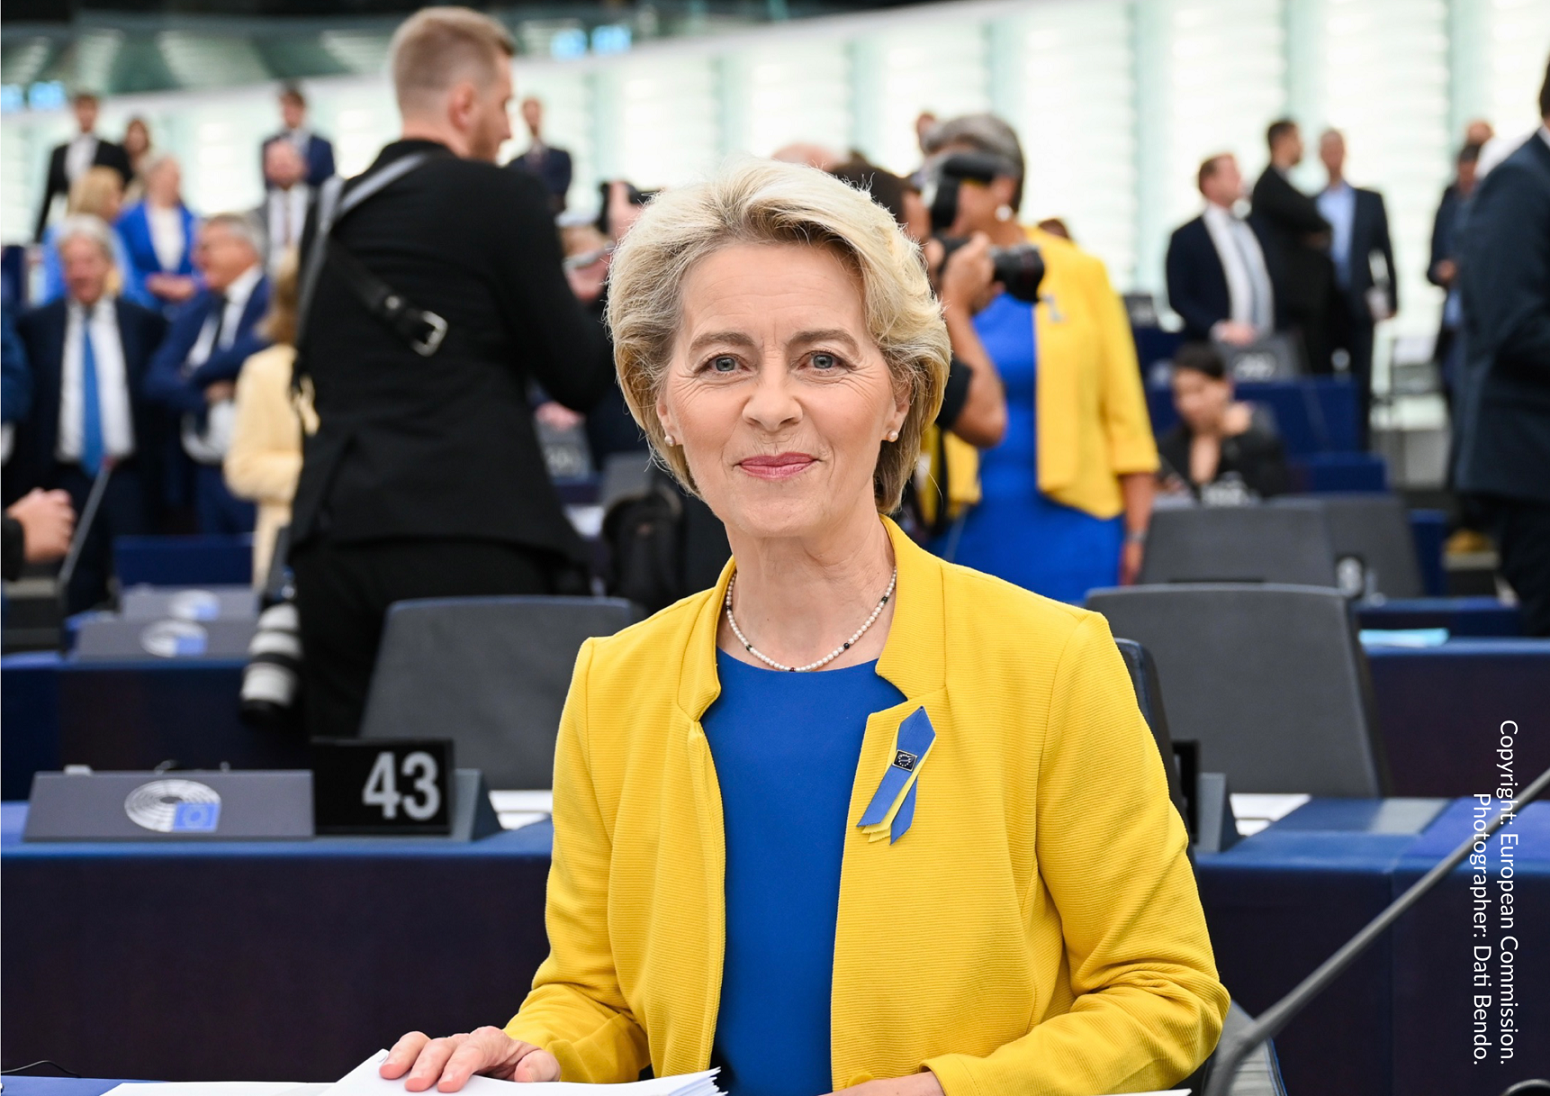 Ursula von der Leyen, President of the European Commission, at the European Parliament in Strasbourg, 14 September 2022